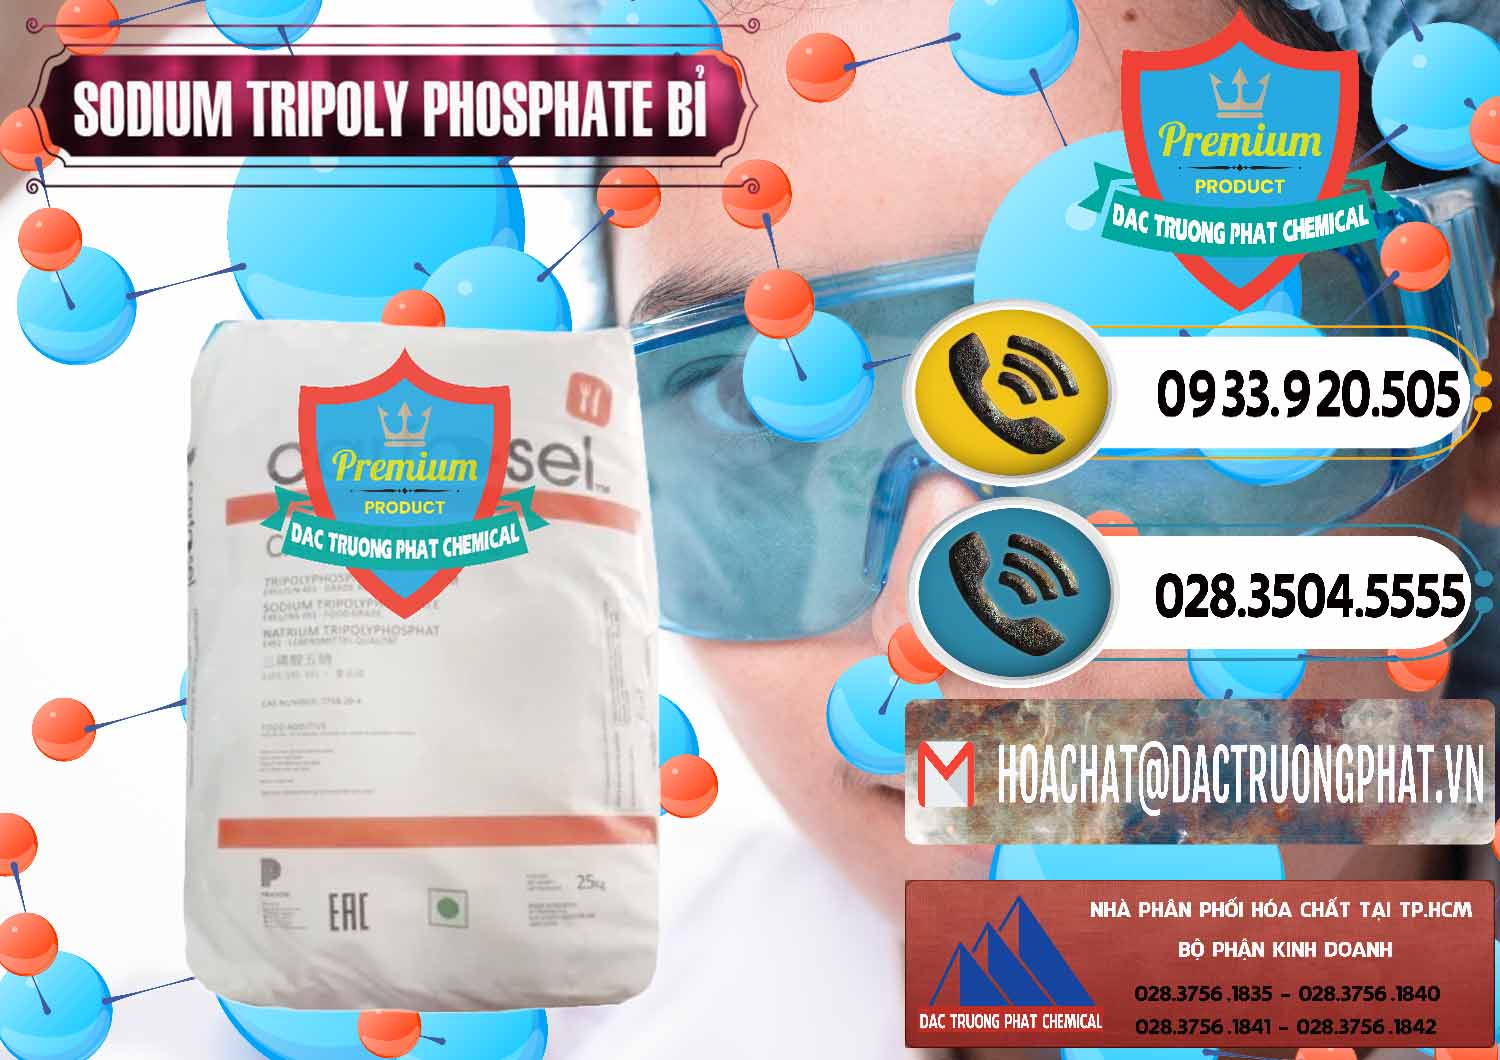 Đơn vị chuyên bán _ cung ứng Sodium Tripoly Phosphate - STPP Carfosel 991 Bỉ Belgium - 0429 - Chuyên nhập khẩu - phân phối hóa chất tại TP.HCM - hoachatdetnhuom.vn